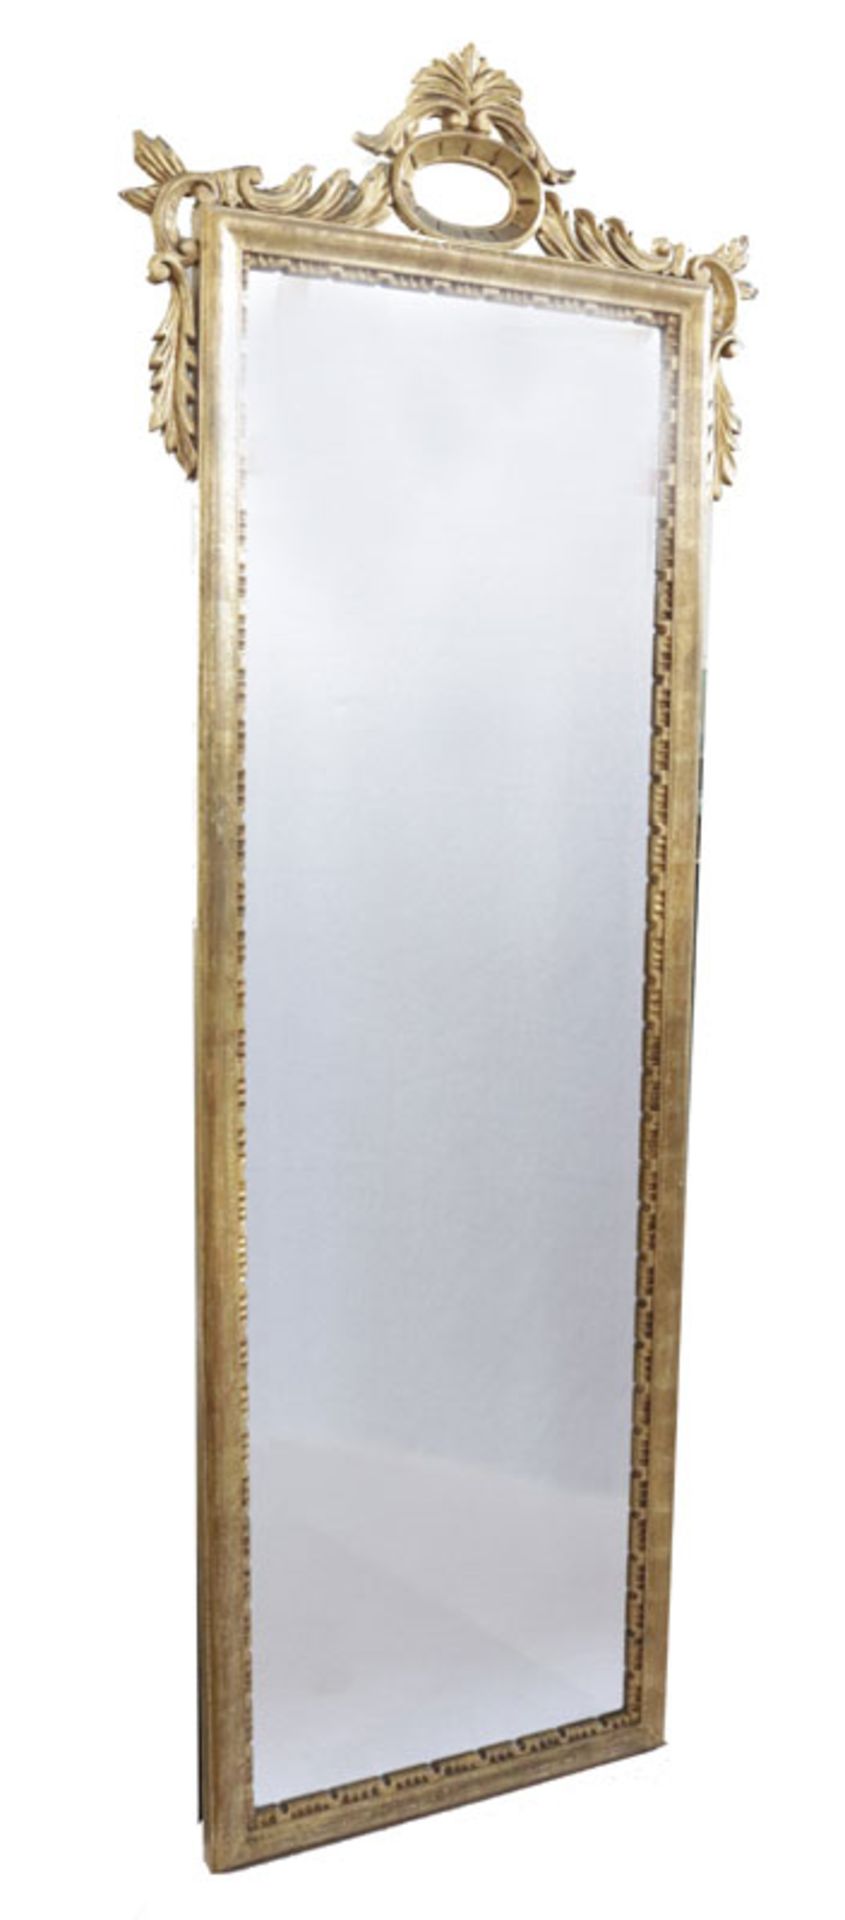 Wandspiegel in verziertem Goldrahmen, Rahmen teils beschädigt, incl. Rahmen 148 cm x 55 cm, Abholung